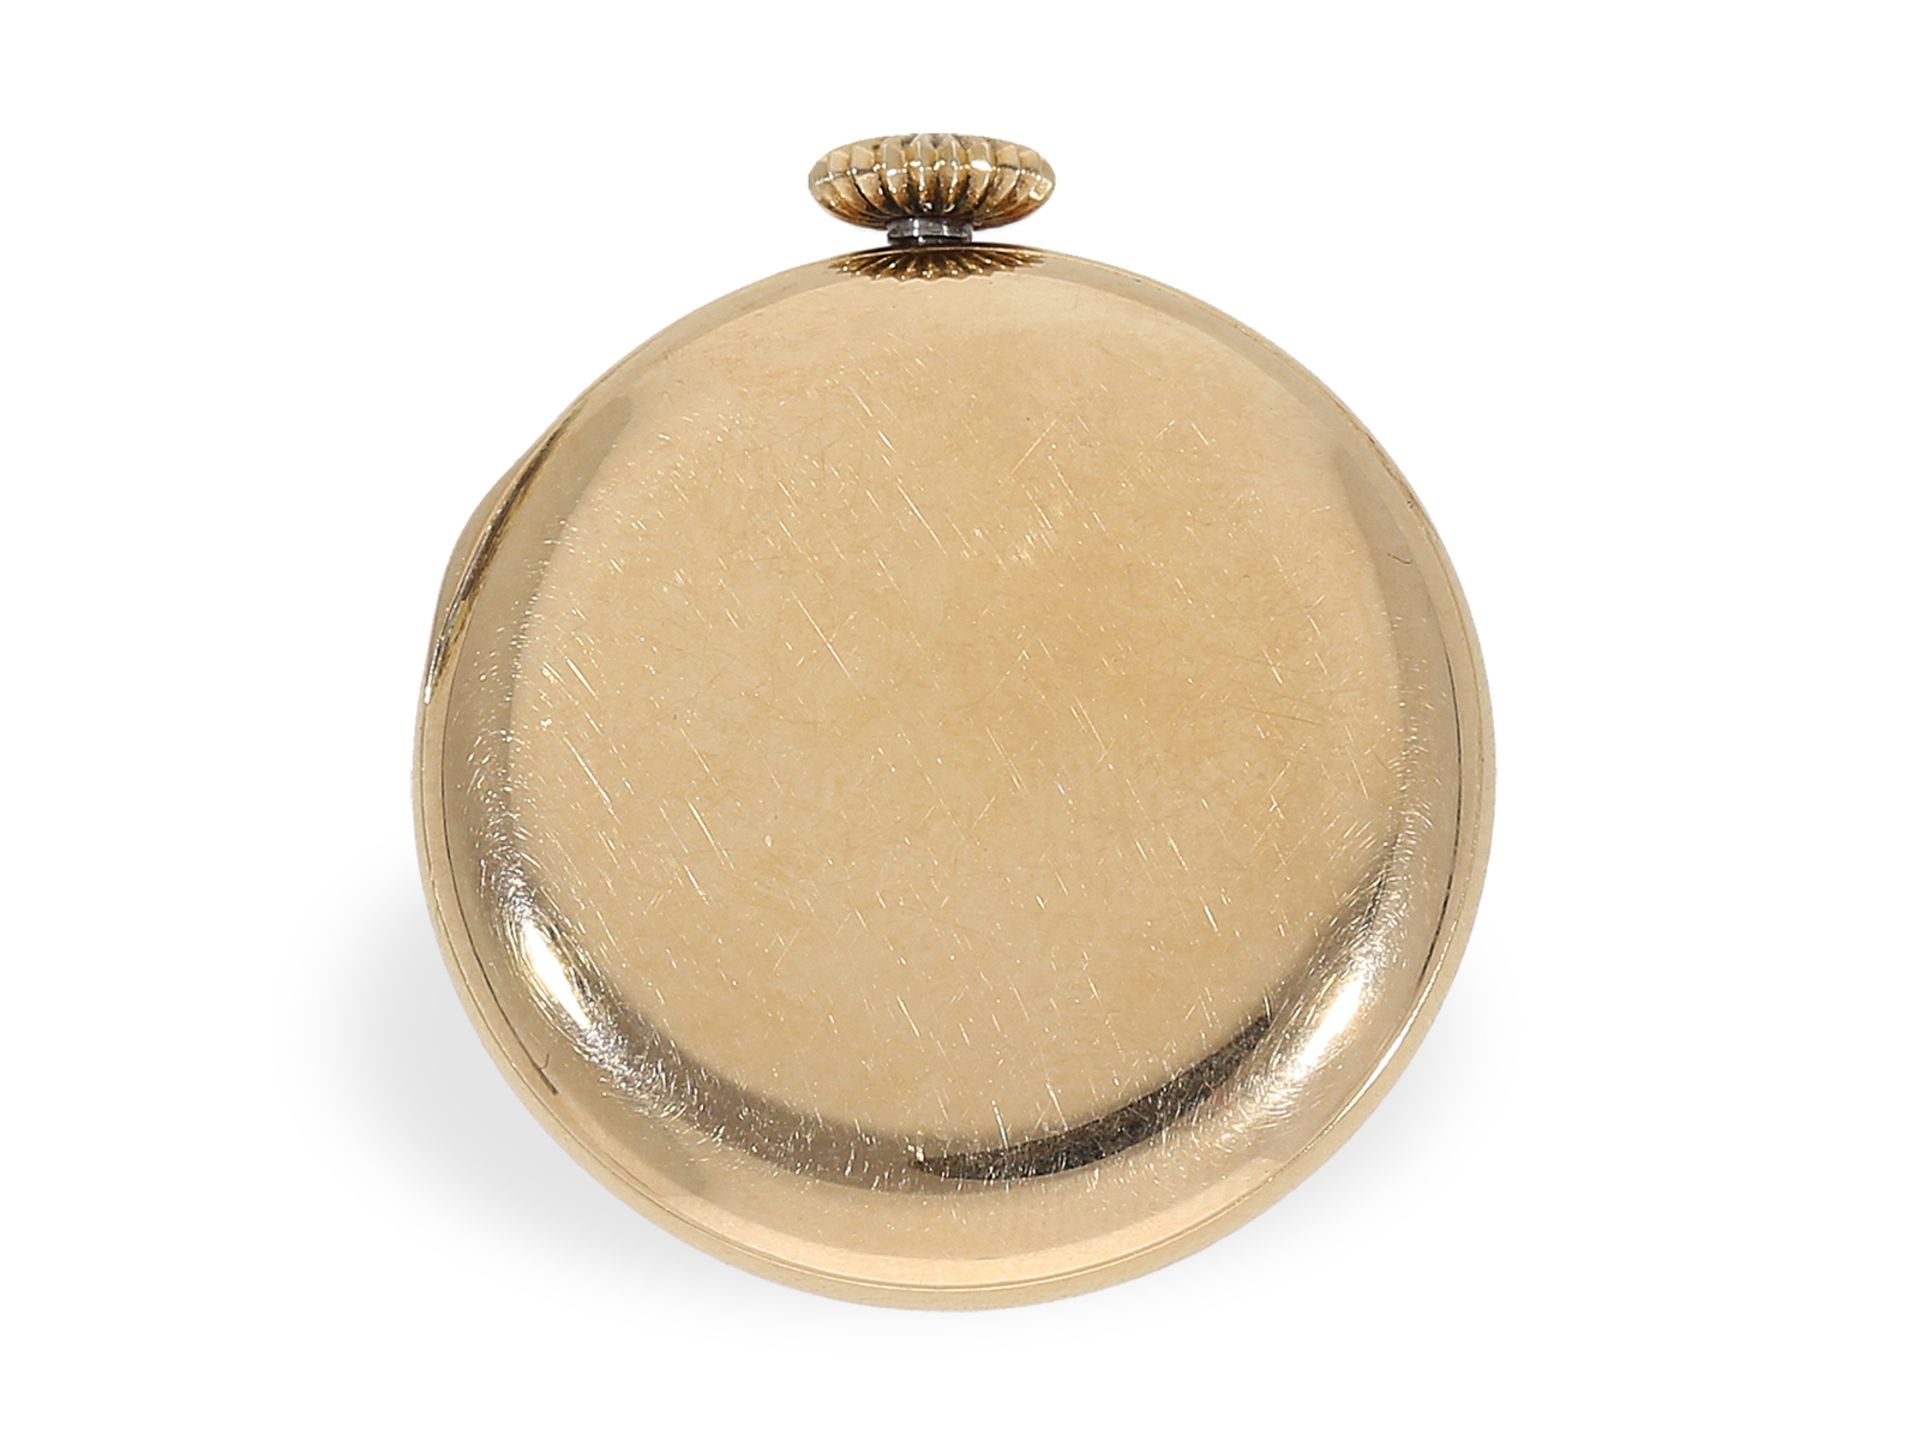 Knopflochuhr: sehr seltene Knopflochuhr in der Goldausführung, ca. 1900 - Bild 3 aus 3